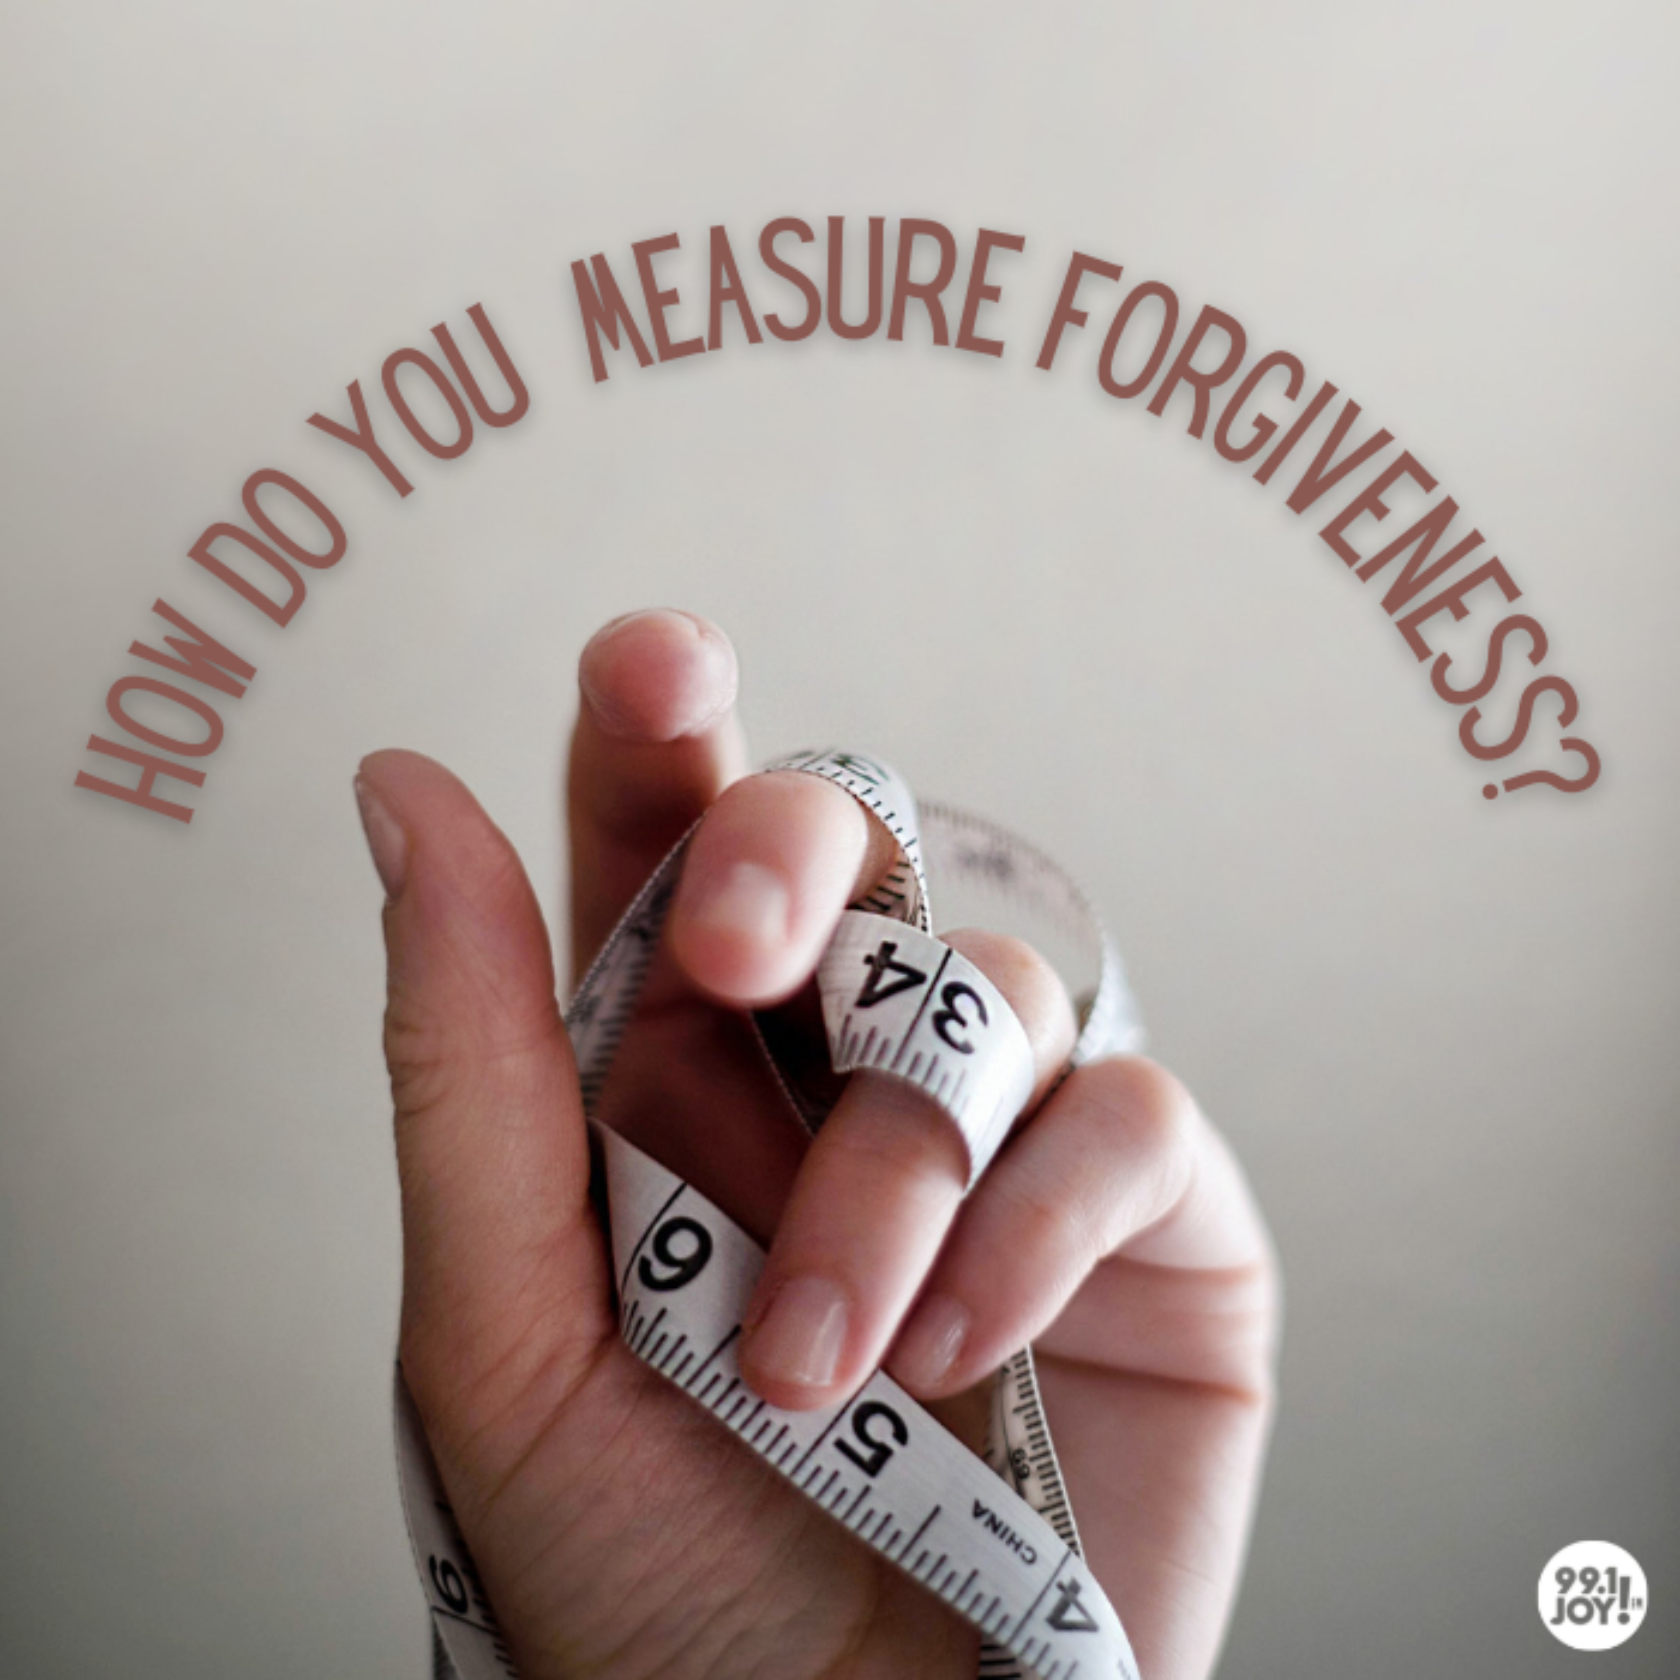 How Do You Measure Forgiveness?